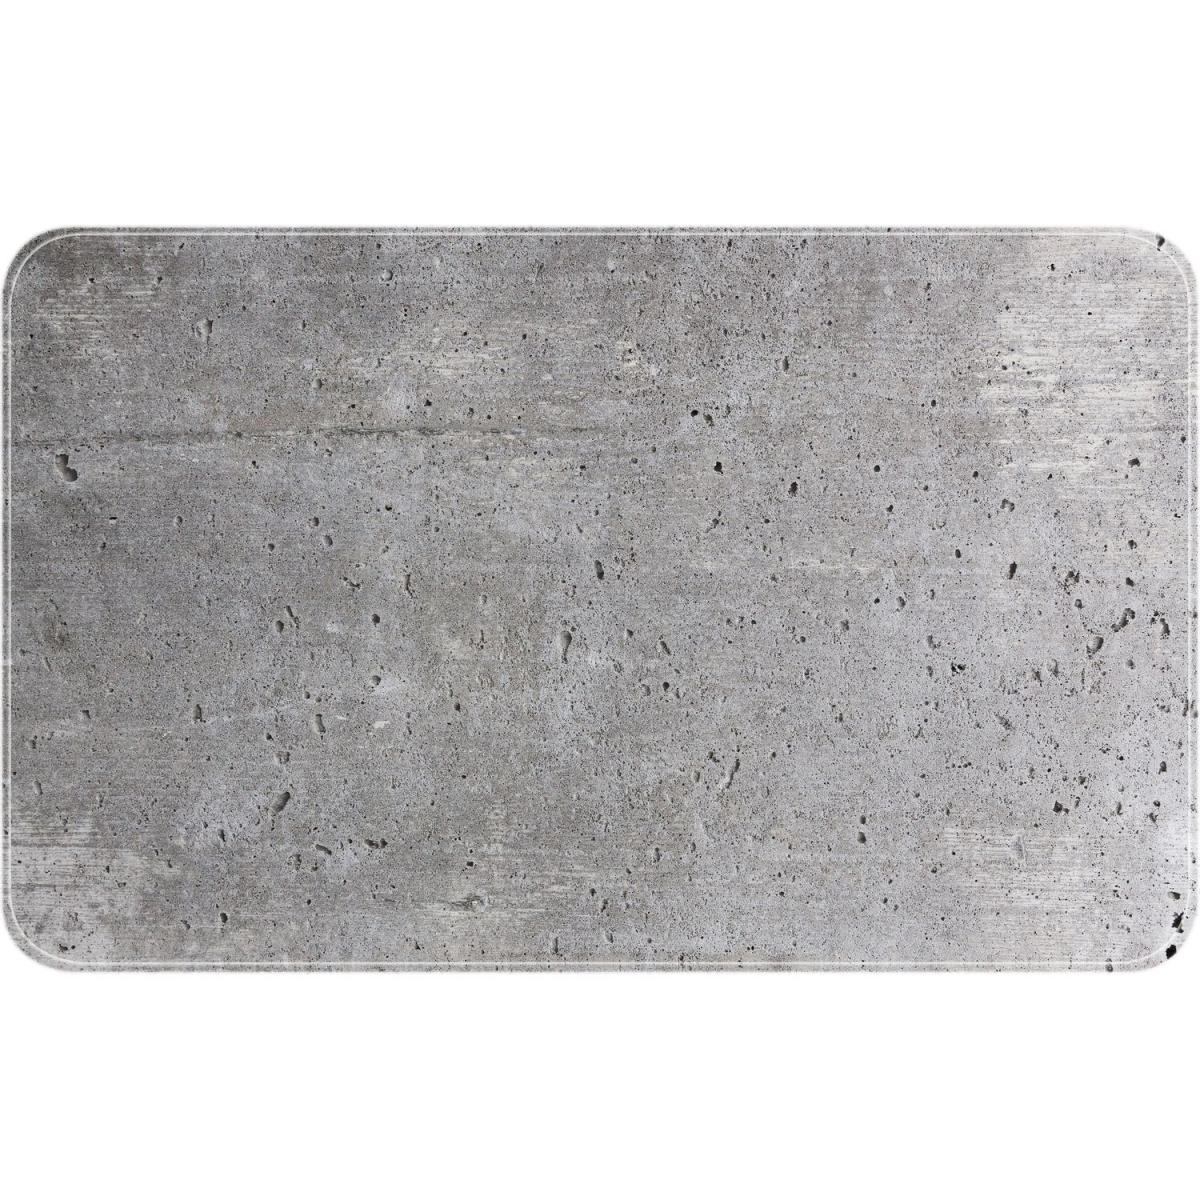 Wenko - Tapis de baignoire antidérapant design ciment Concrete - L. 70 x l. 40 cm - Gris - Tapis